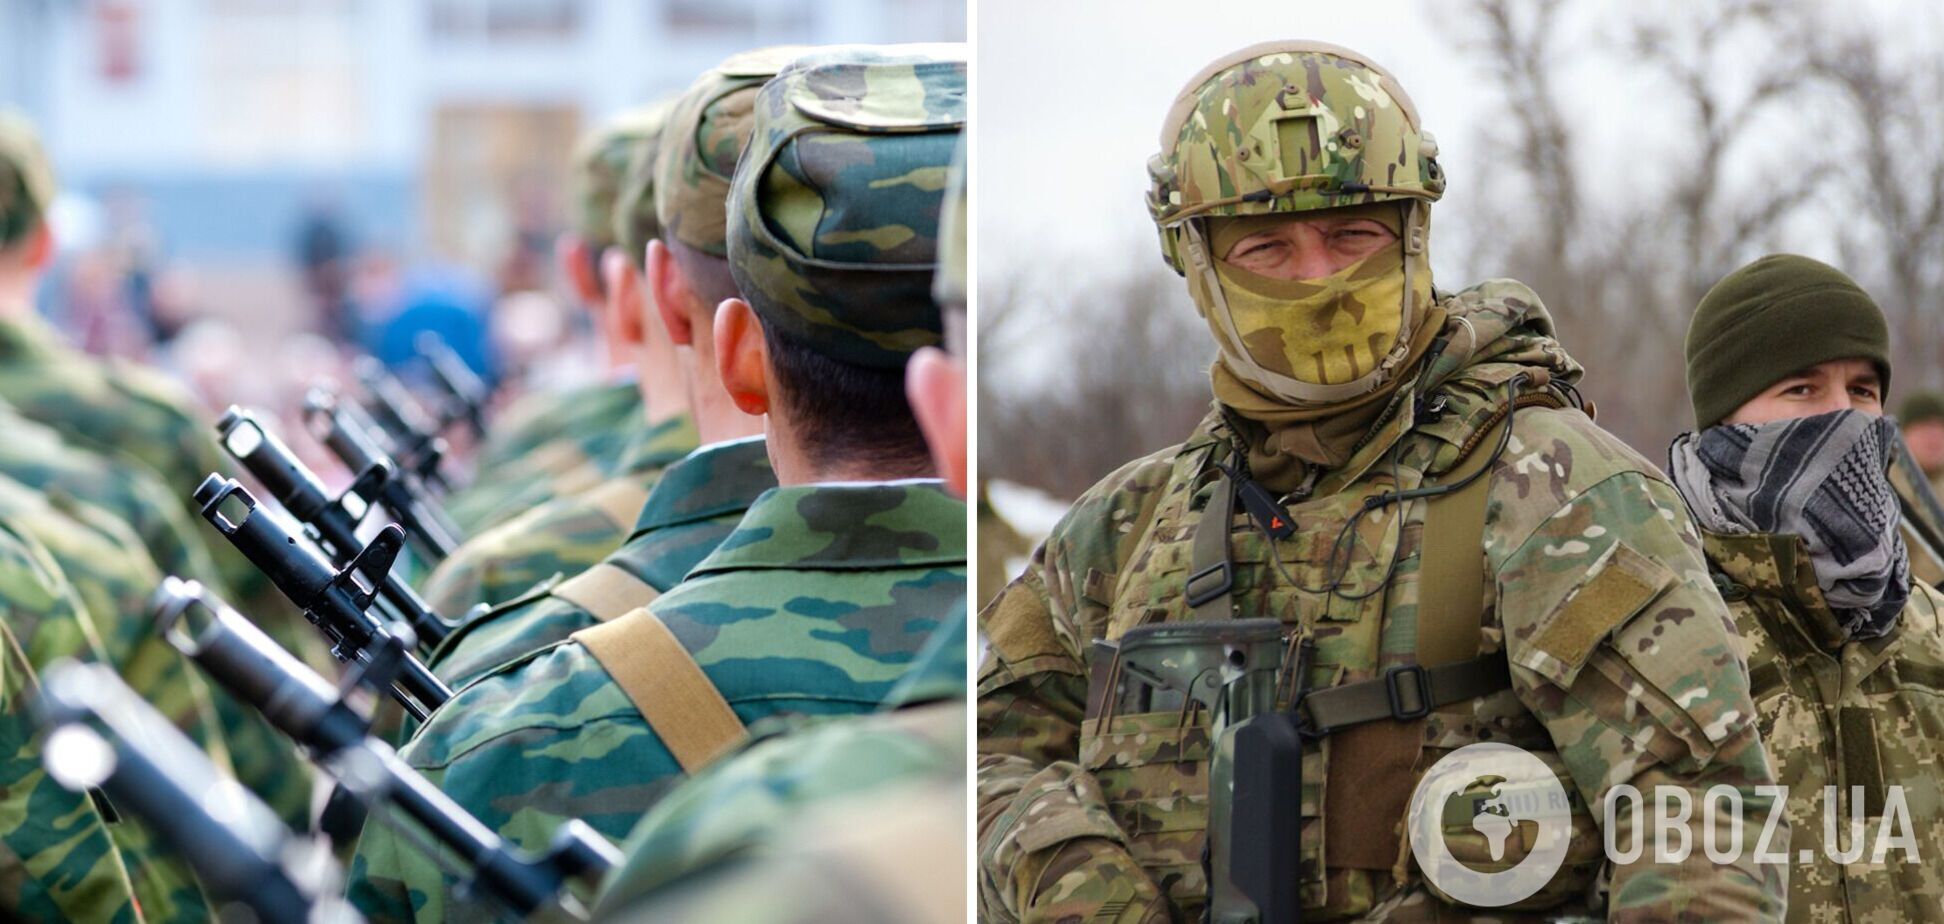 'Втрати конкретні': окупантів вразила оборона ЗСУ, в армії Путіна полетіли голови. Аудіо розмови